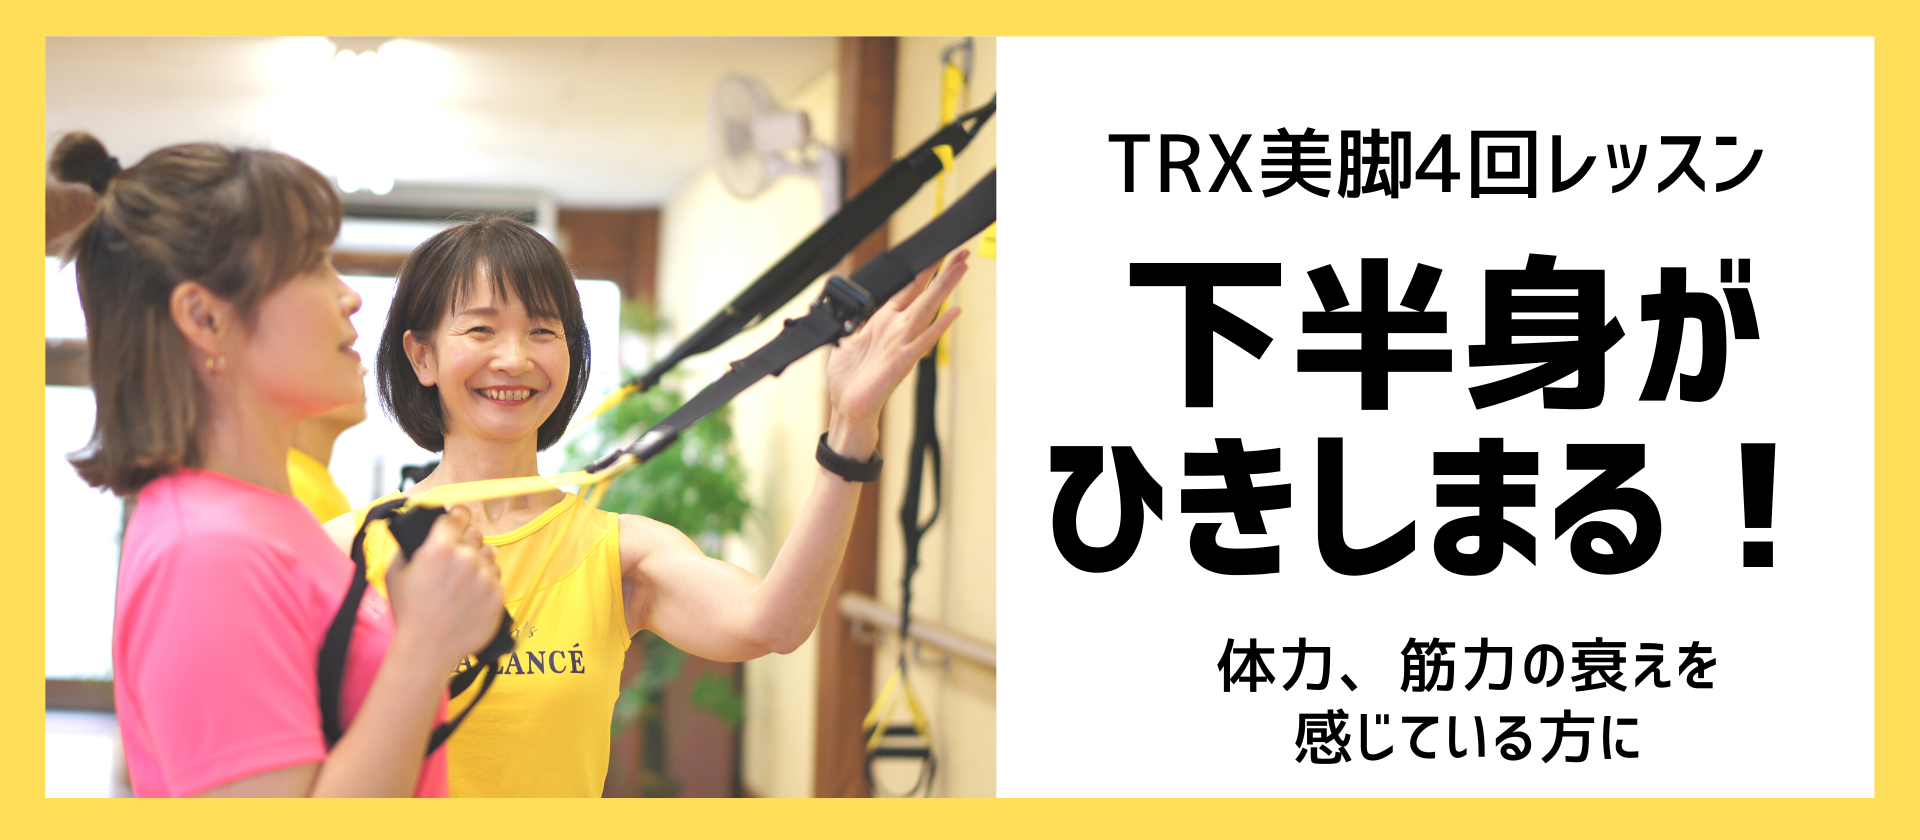 TRX (8)